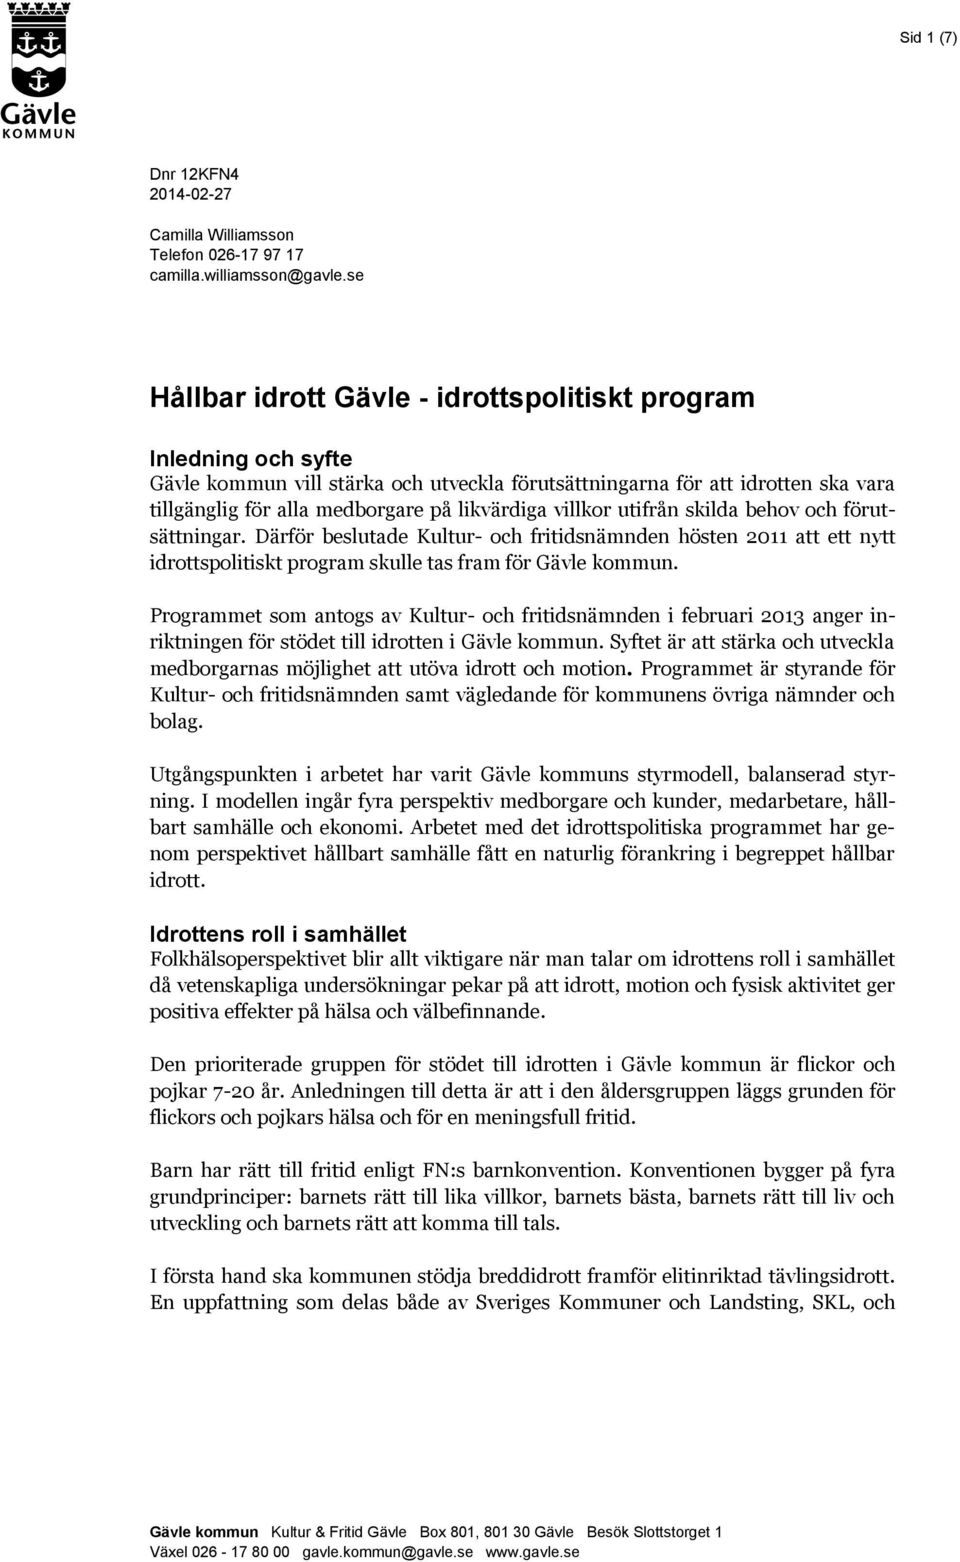 villkor utifrån skilda behov och förutsättningar. Därför beslutade Kultur- och fritidsnämnden hösten 2011 att ett nytt idrottspolitiskt program skulle tas fram för Gävle kommun.